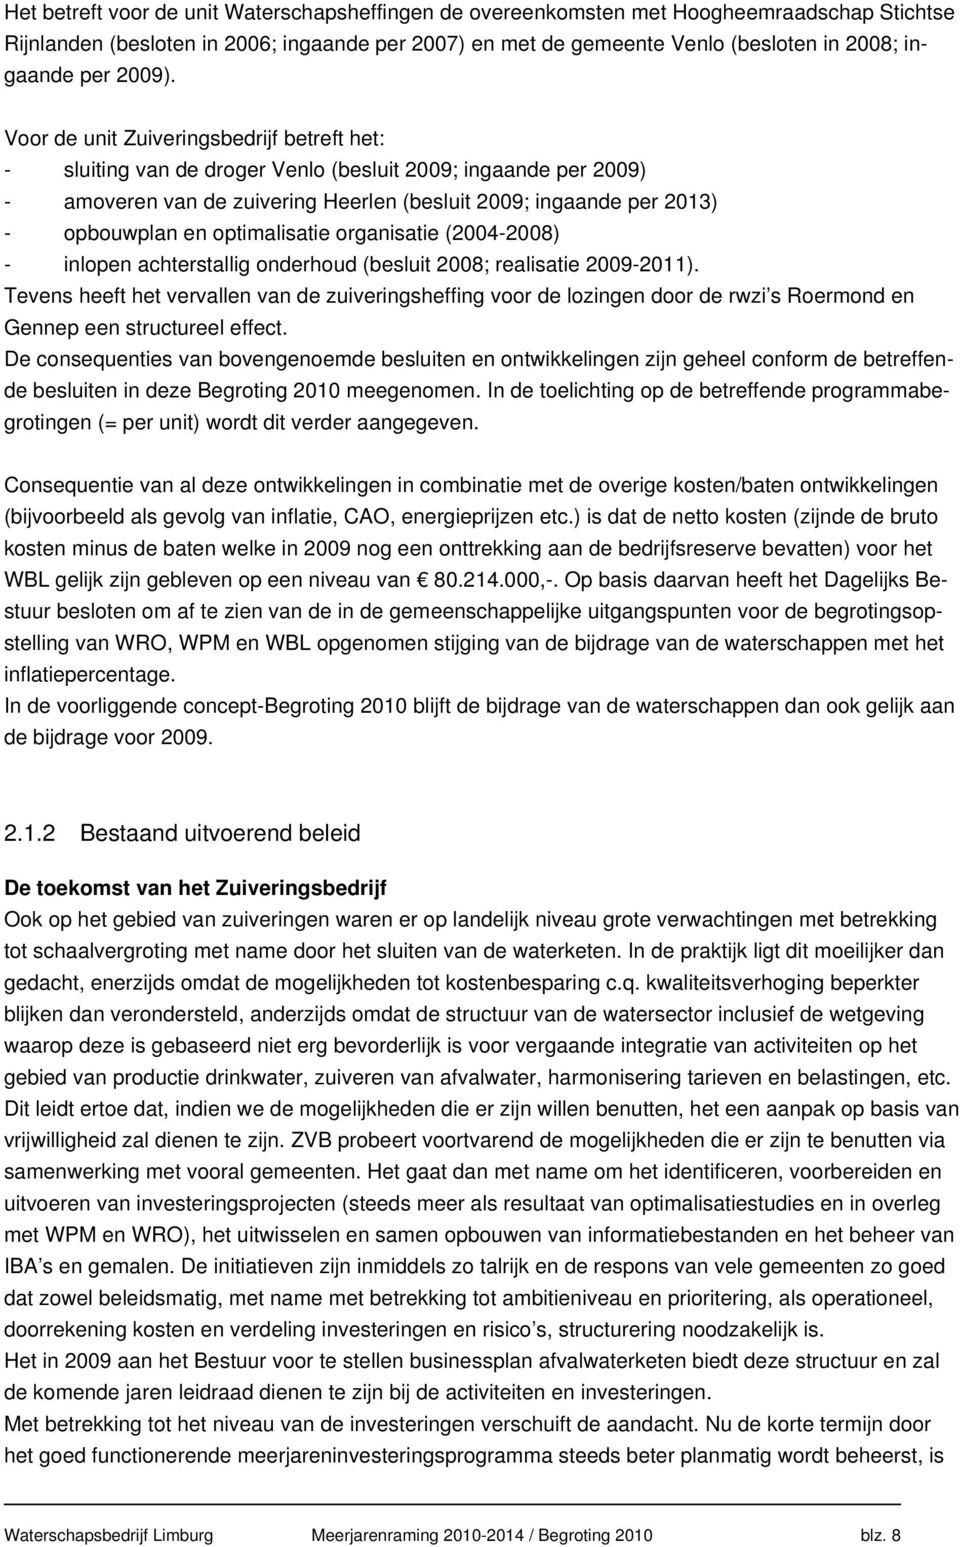 Voor de unit Zuiveringsbedrijf betreft het: - sluiting van de droger Venlo (besluit 2009; ingaande per 2009) - amoveren van de zuivering Heerlen (besluit 2009; ingaande per 2013) - opbouwplan en